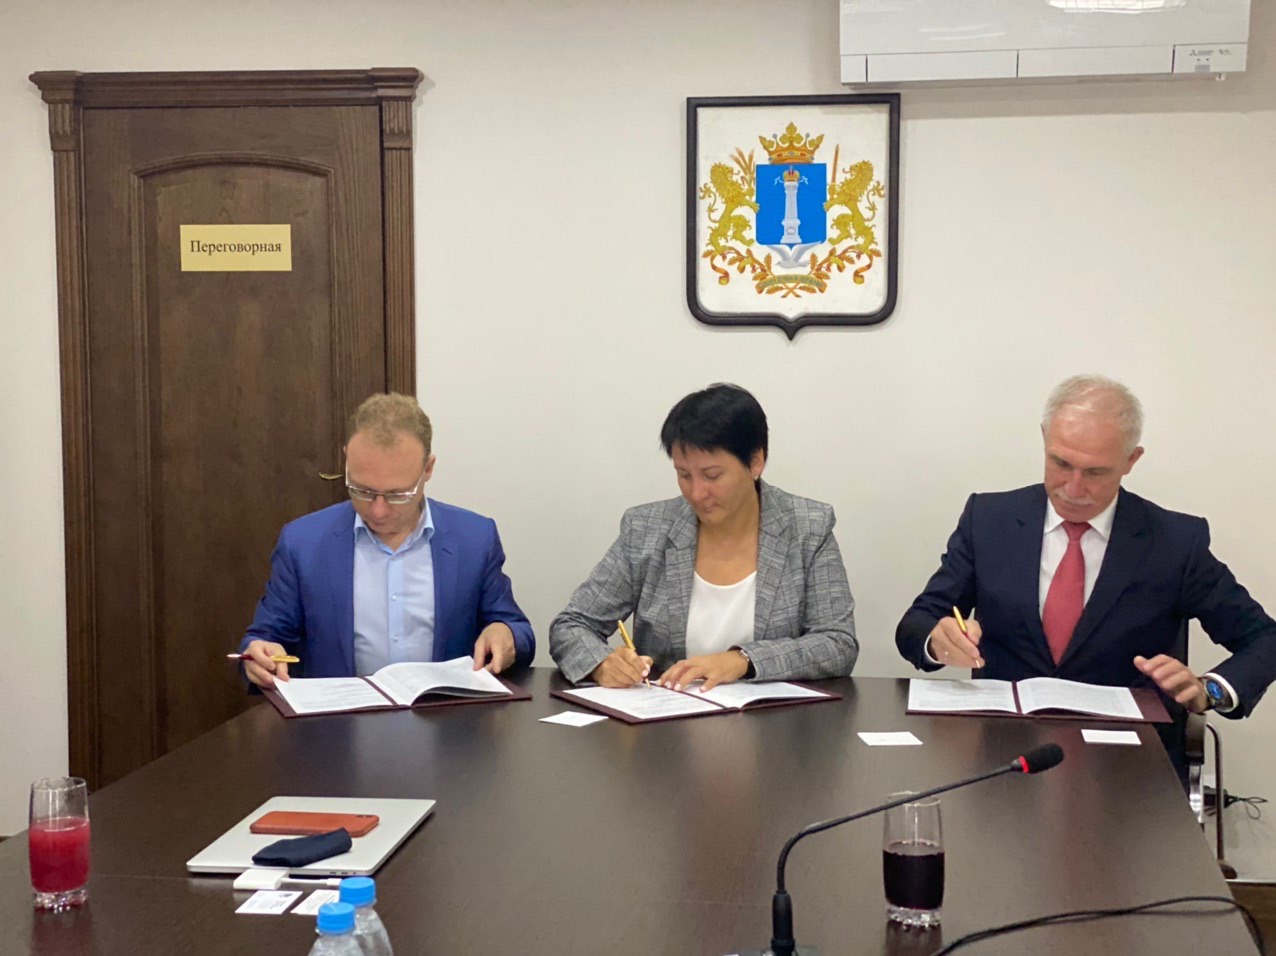 Ульяновская обл. и АО «Архбум» подписали инвестиционное соглашение